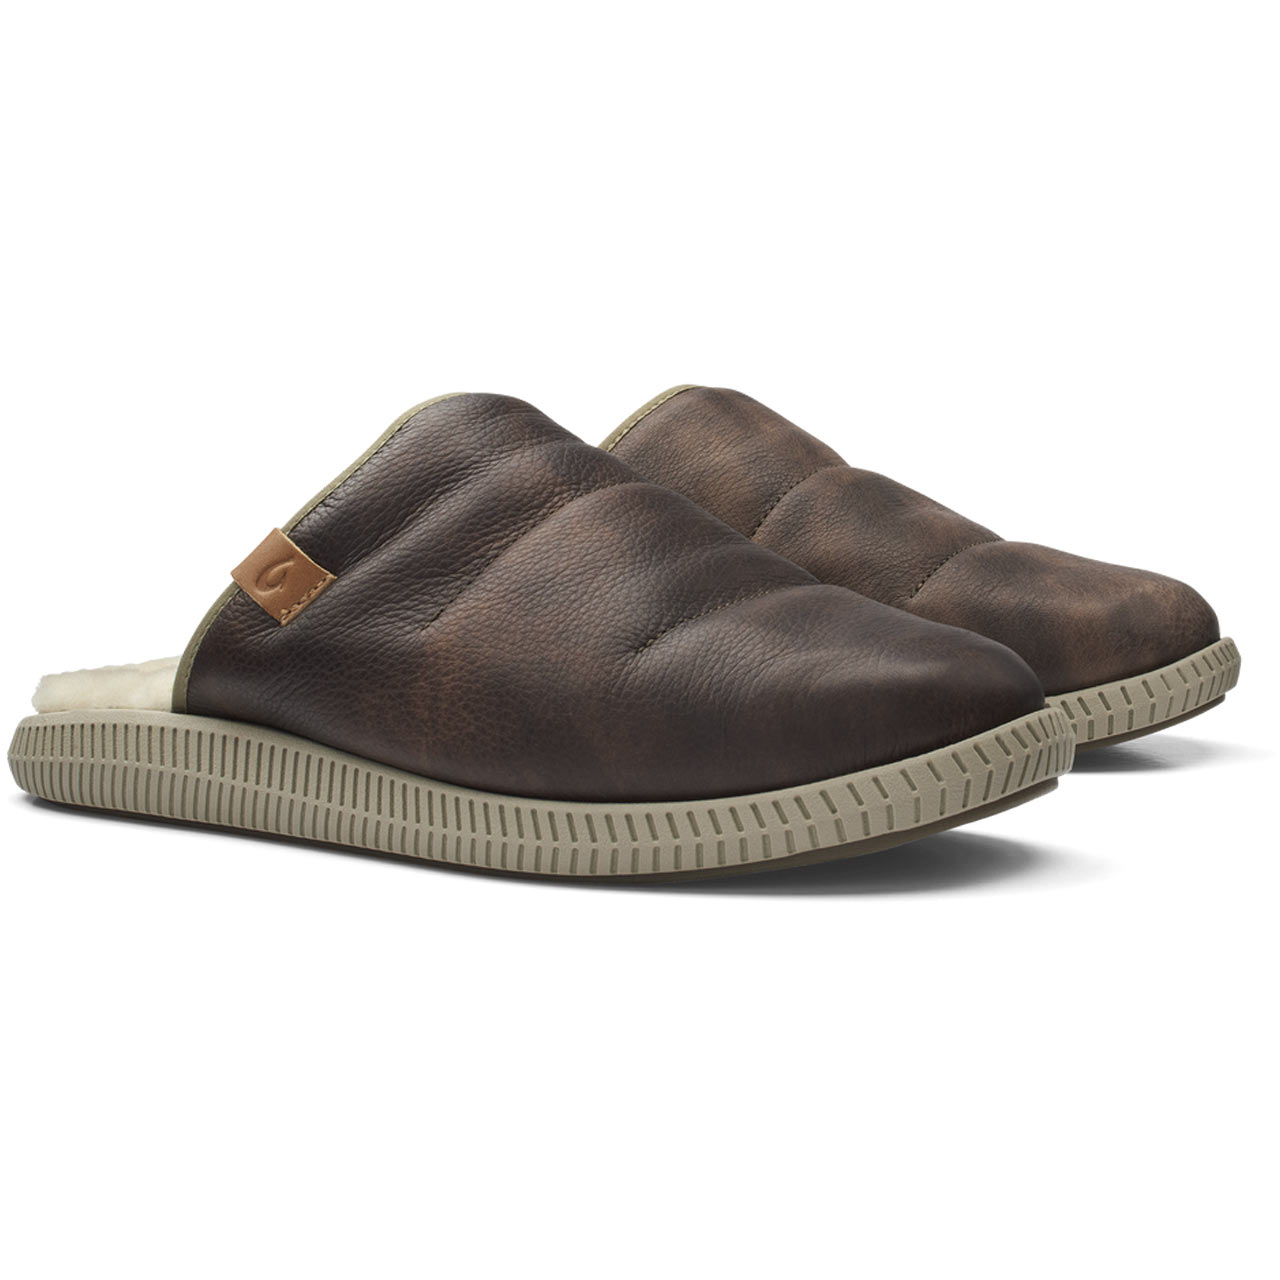 Men's Olukai Mua ‘Ili Slide Slipper Premium Butter Soft Leather #10502-6321 Dark Wood